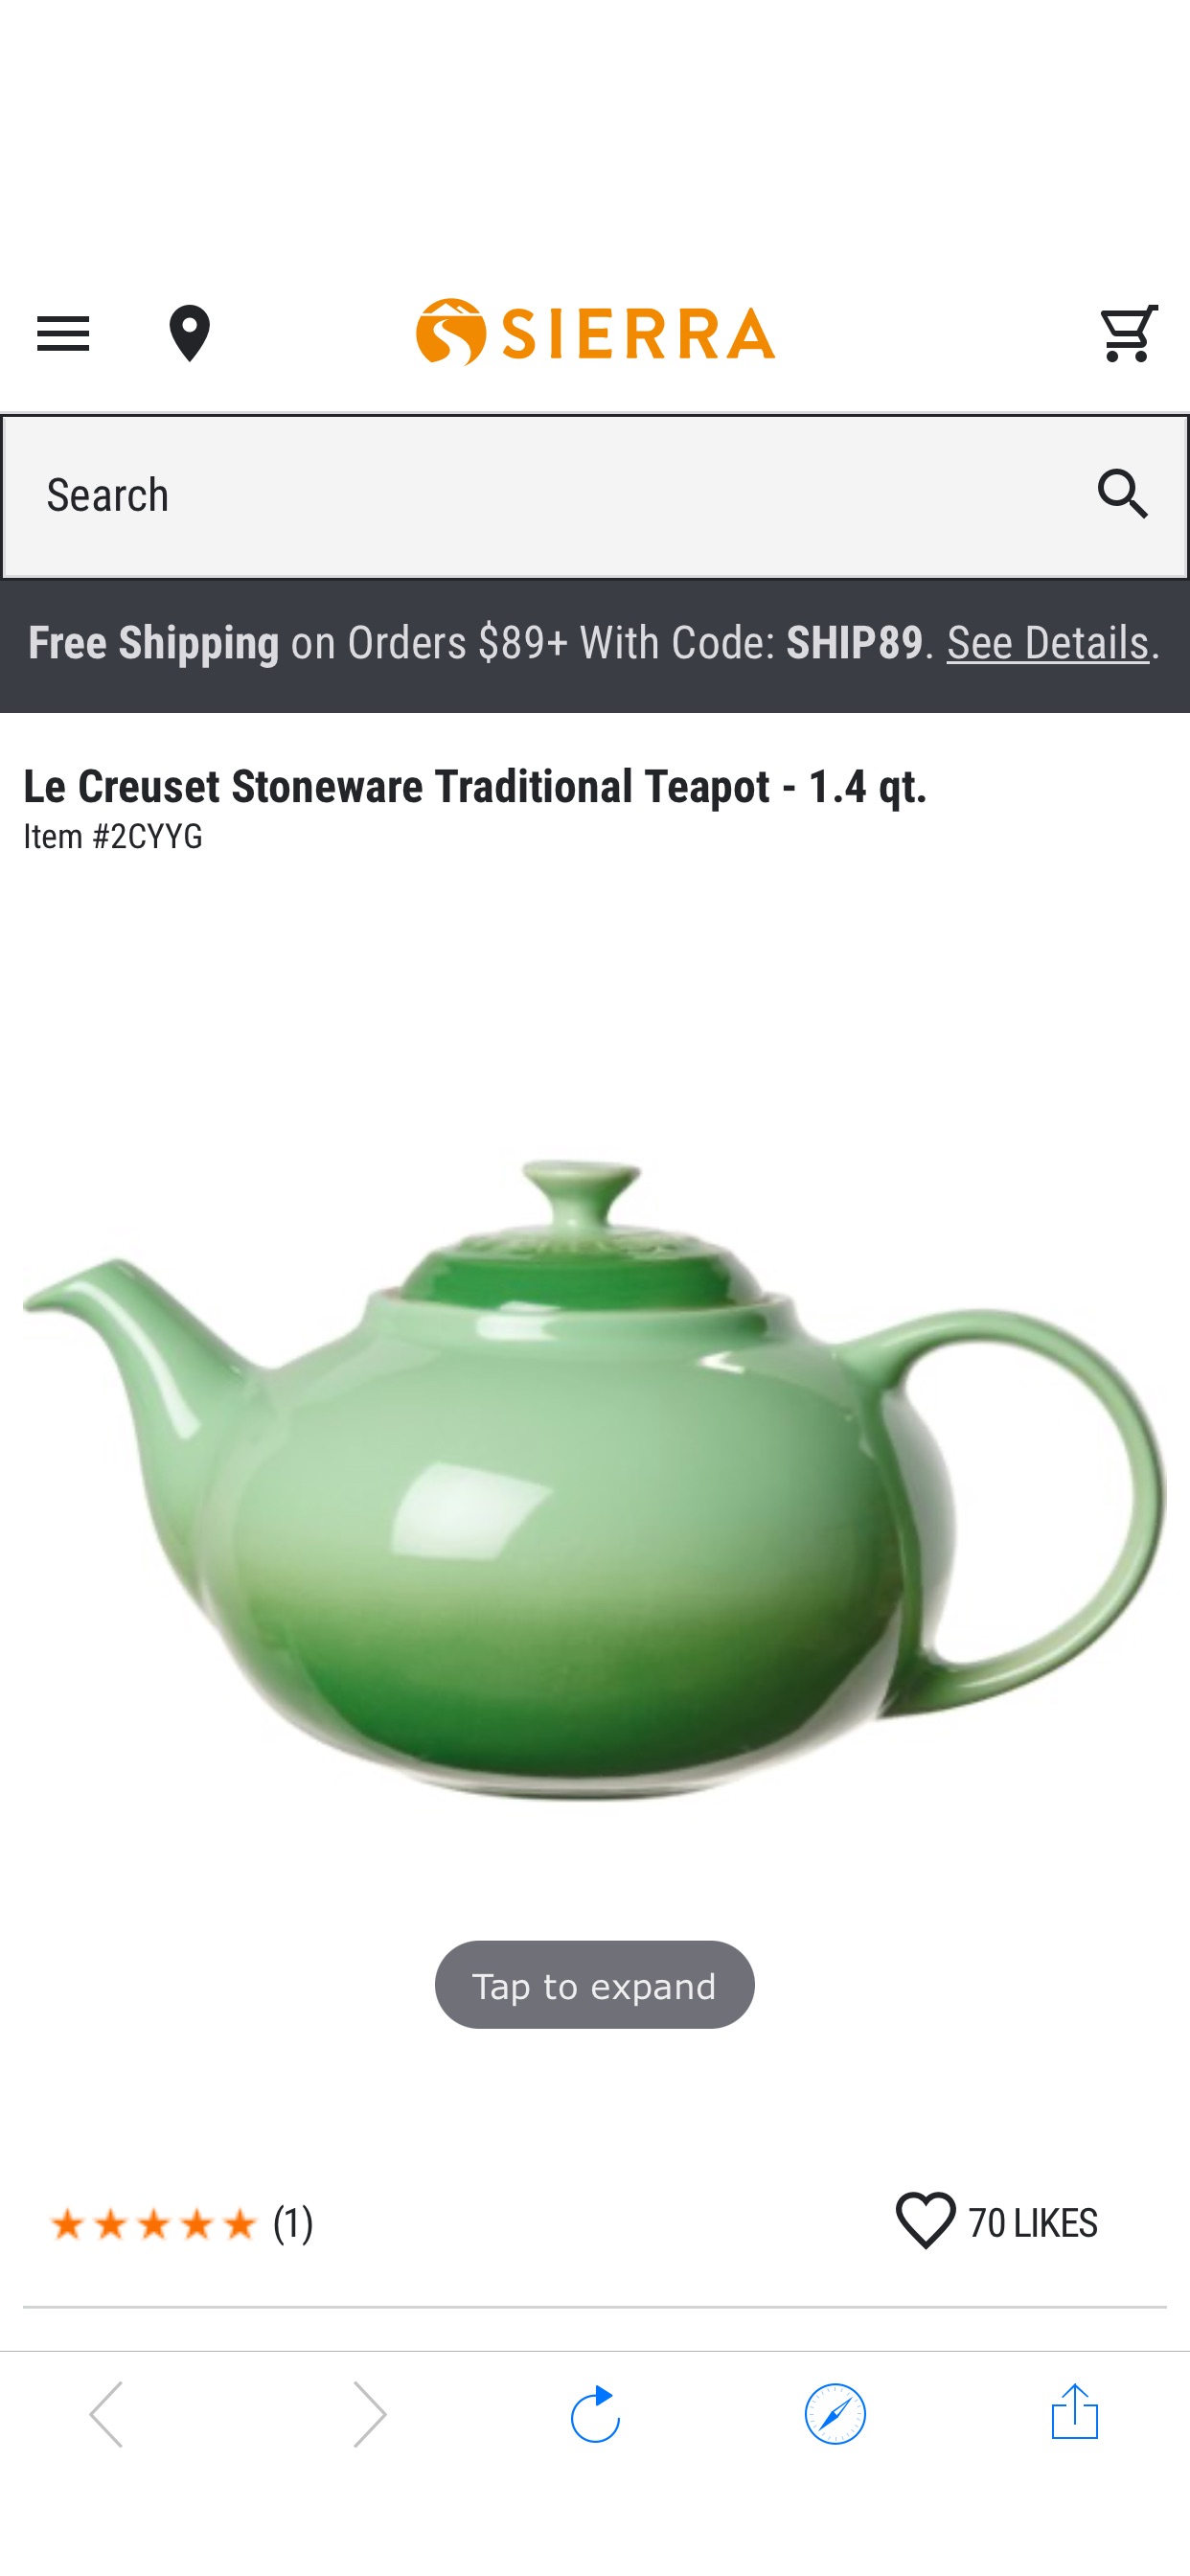 Le Creuset Stoneware Traditional Teapot - 1.4 qt. - Save 40%